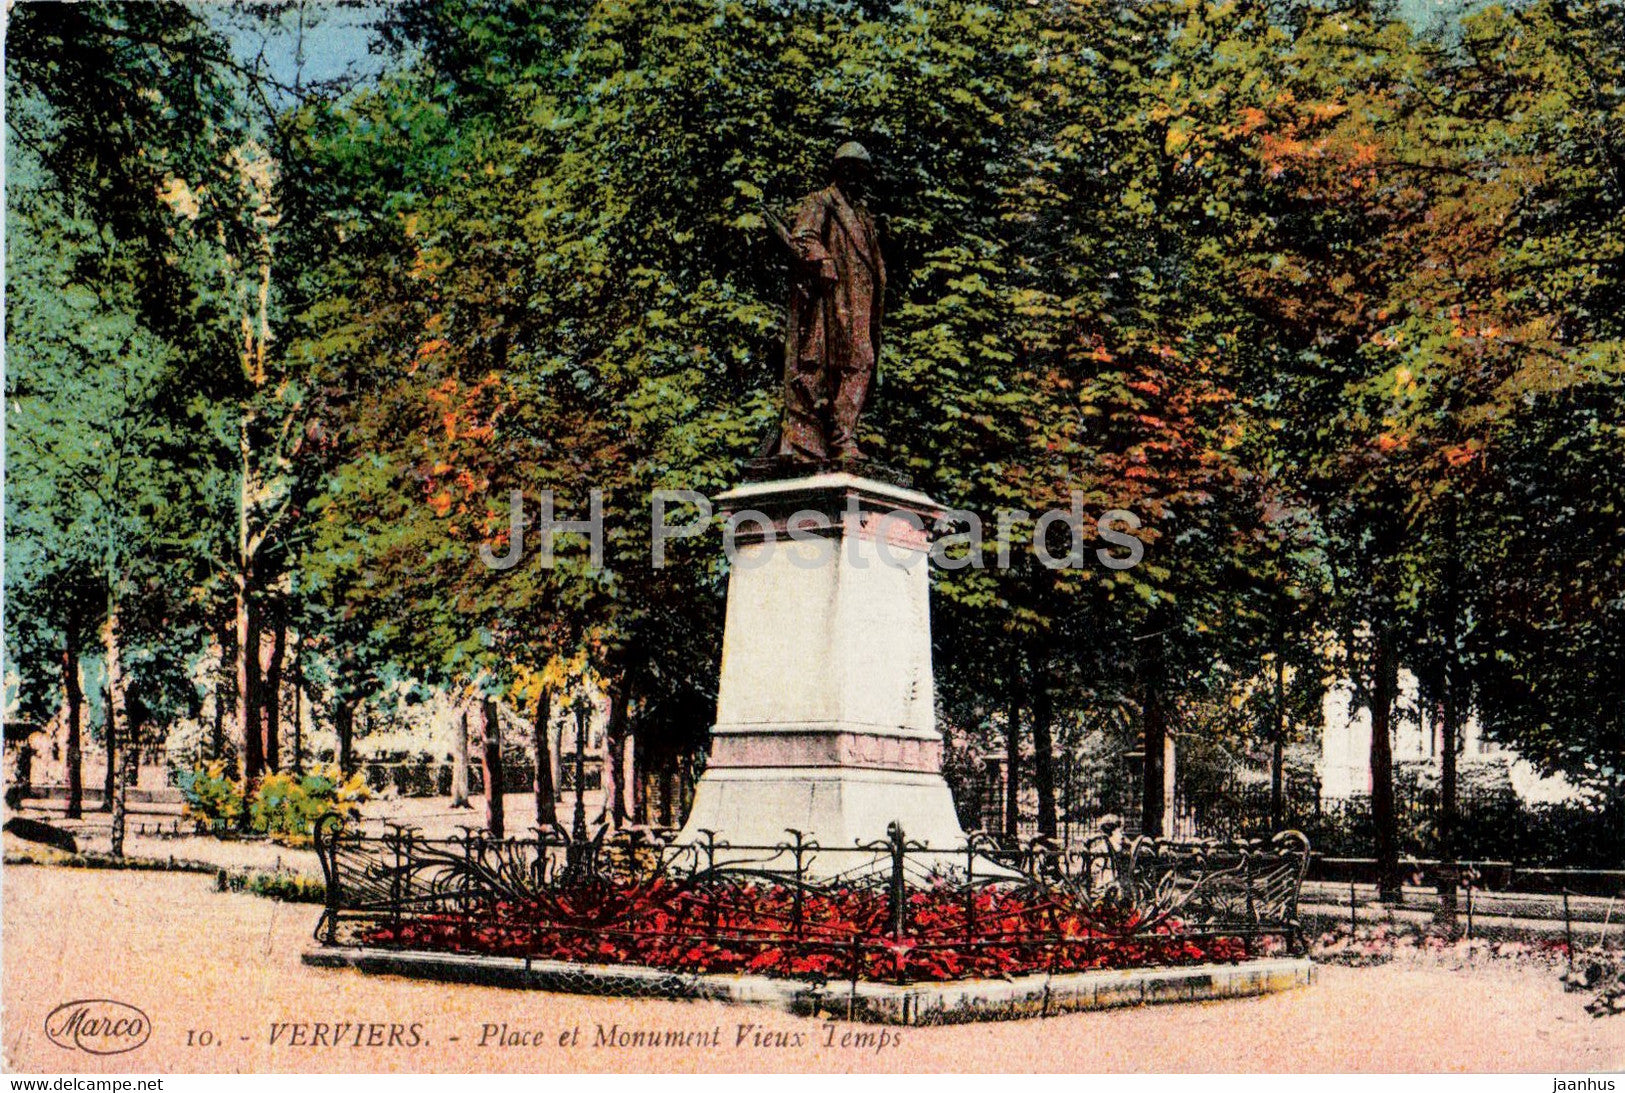 Verviers - Place et Monument Vieux Temps - 10 - old postcard - Belgium - unused - JH Postcards